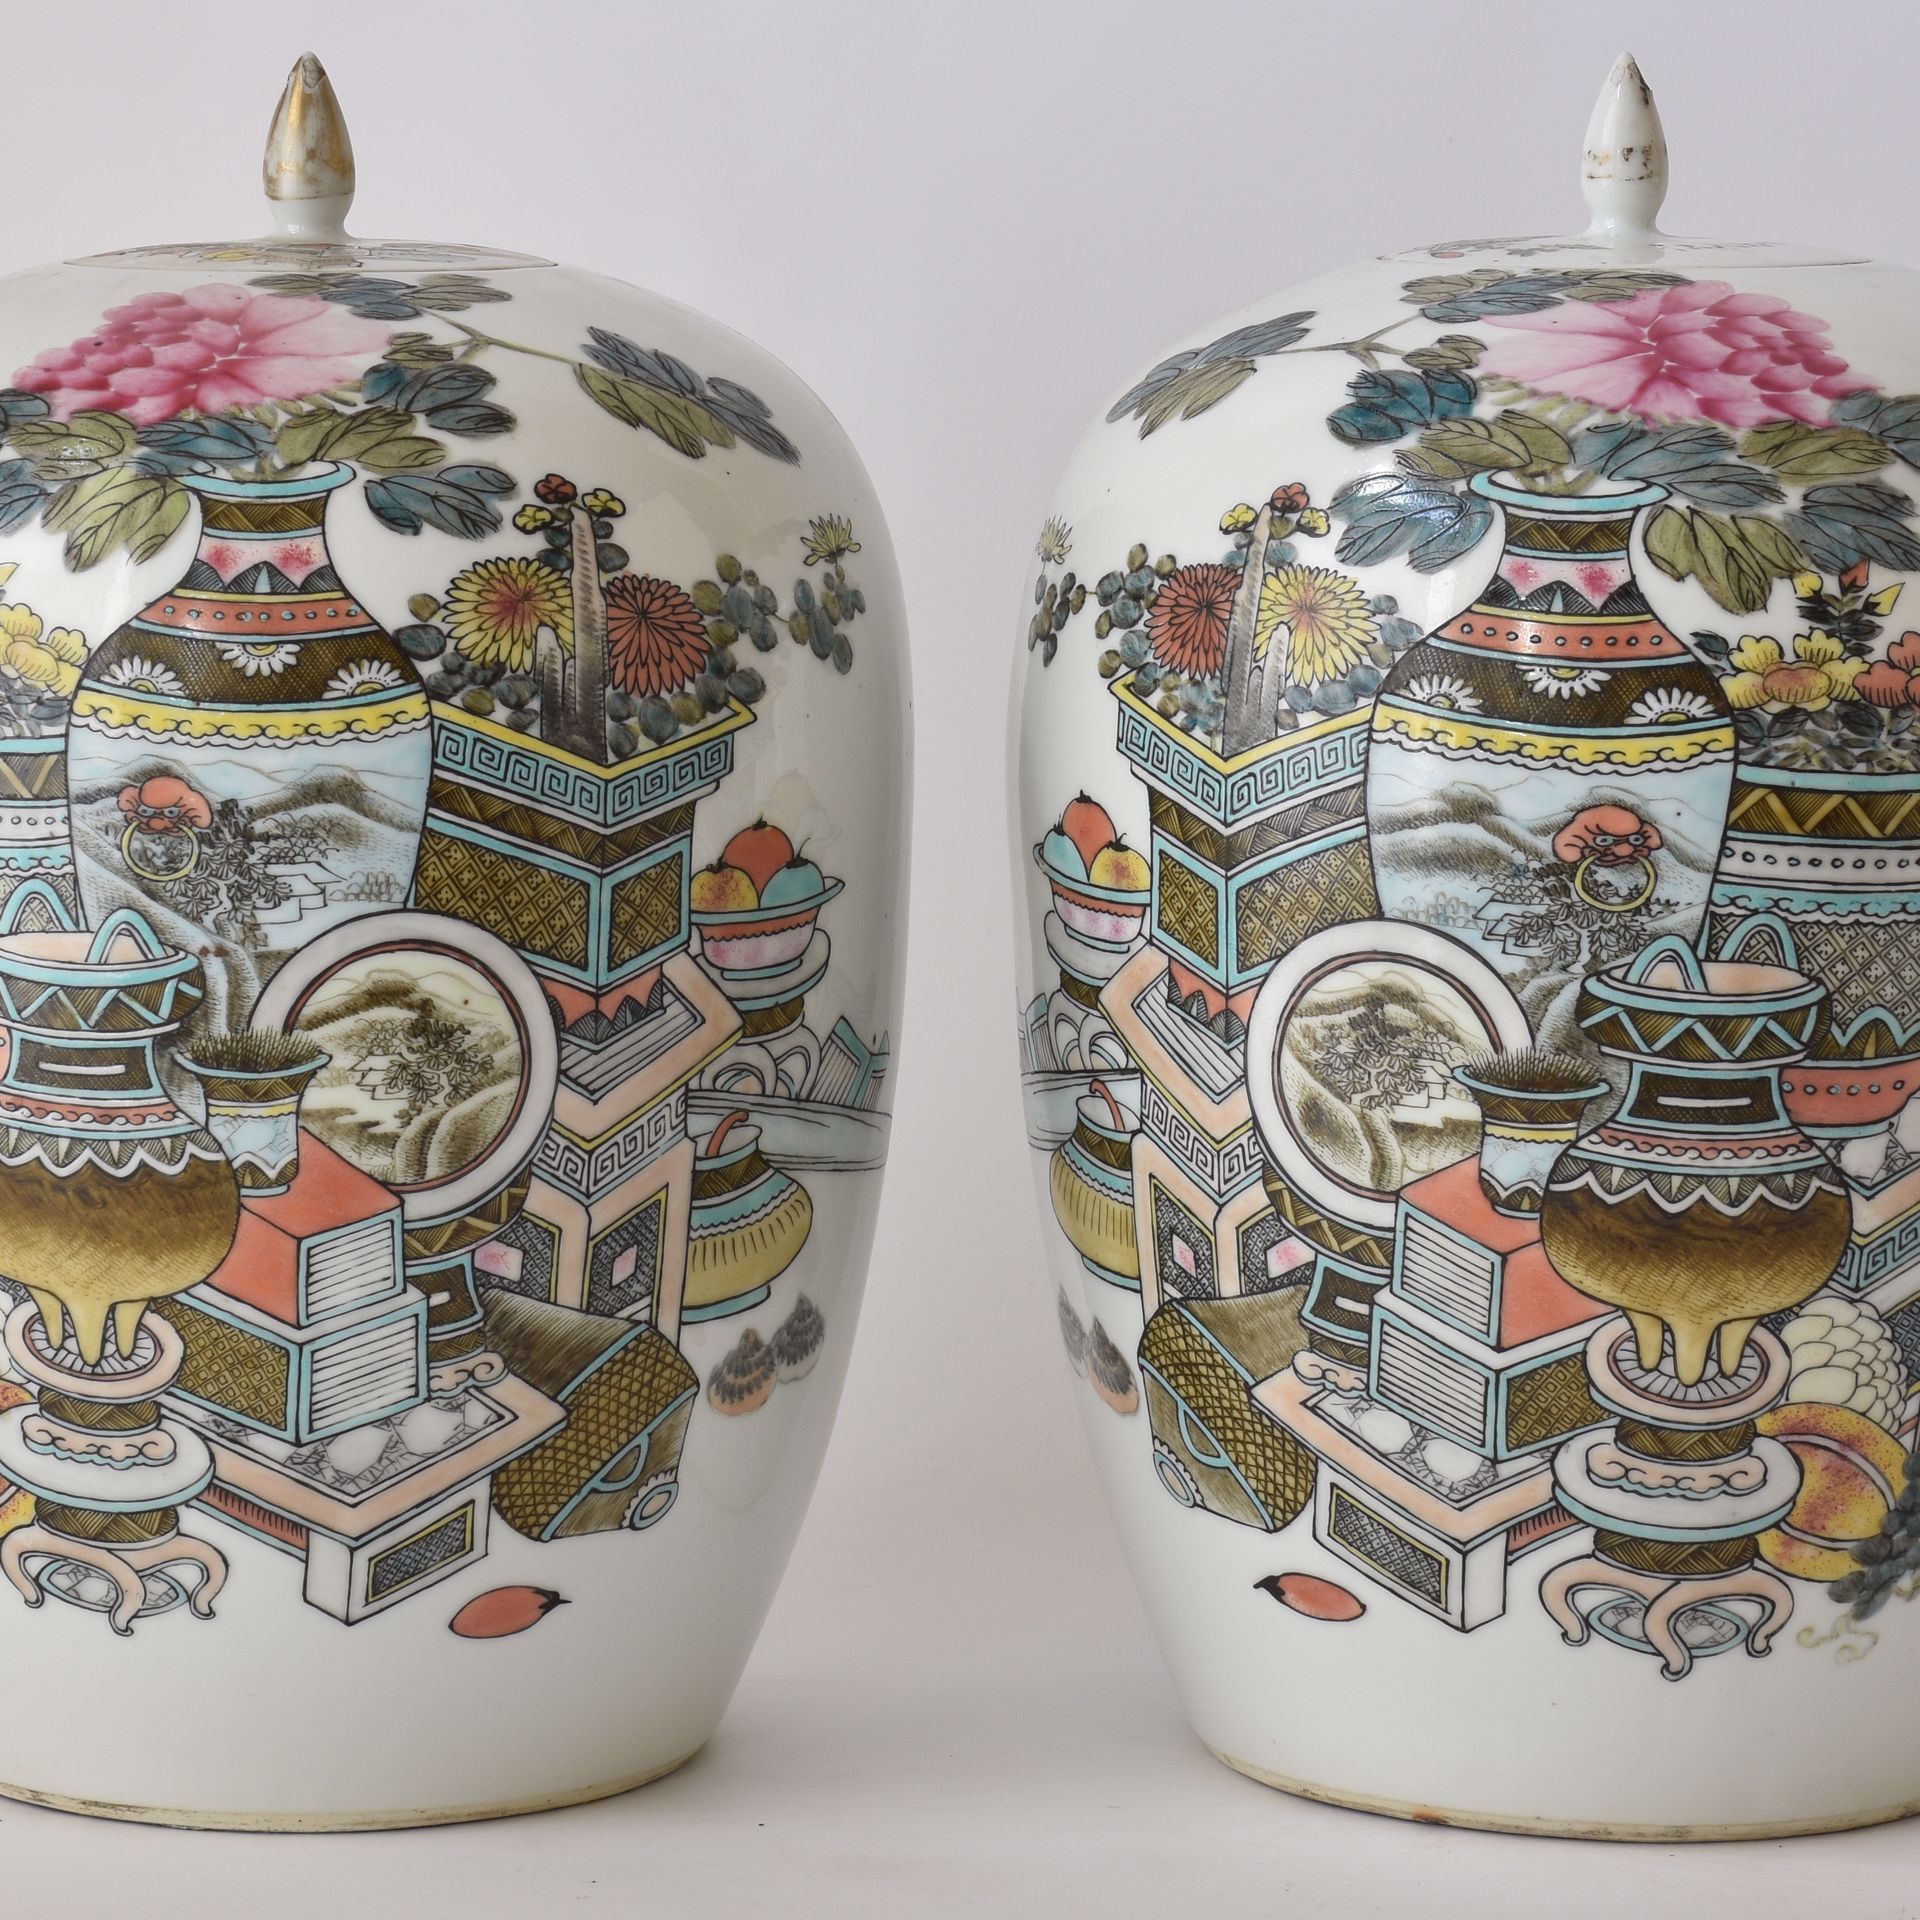 Pair of Ginger Jars mit Dekoration von Gartenvasen. China, markiert.